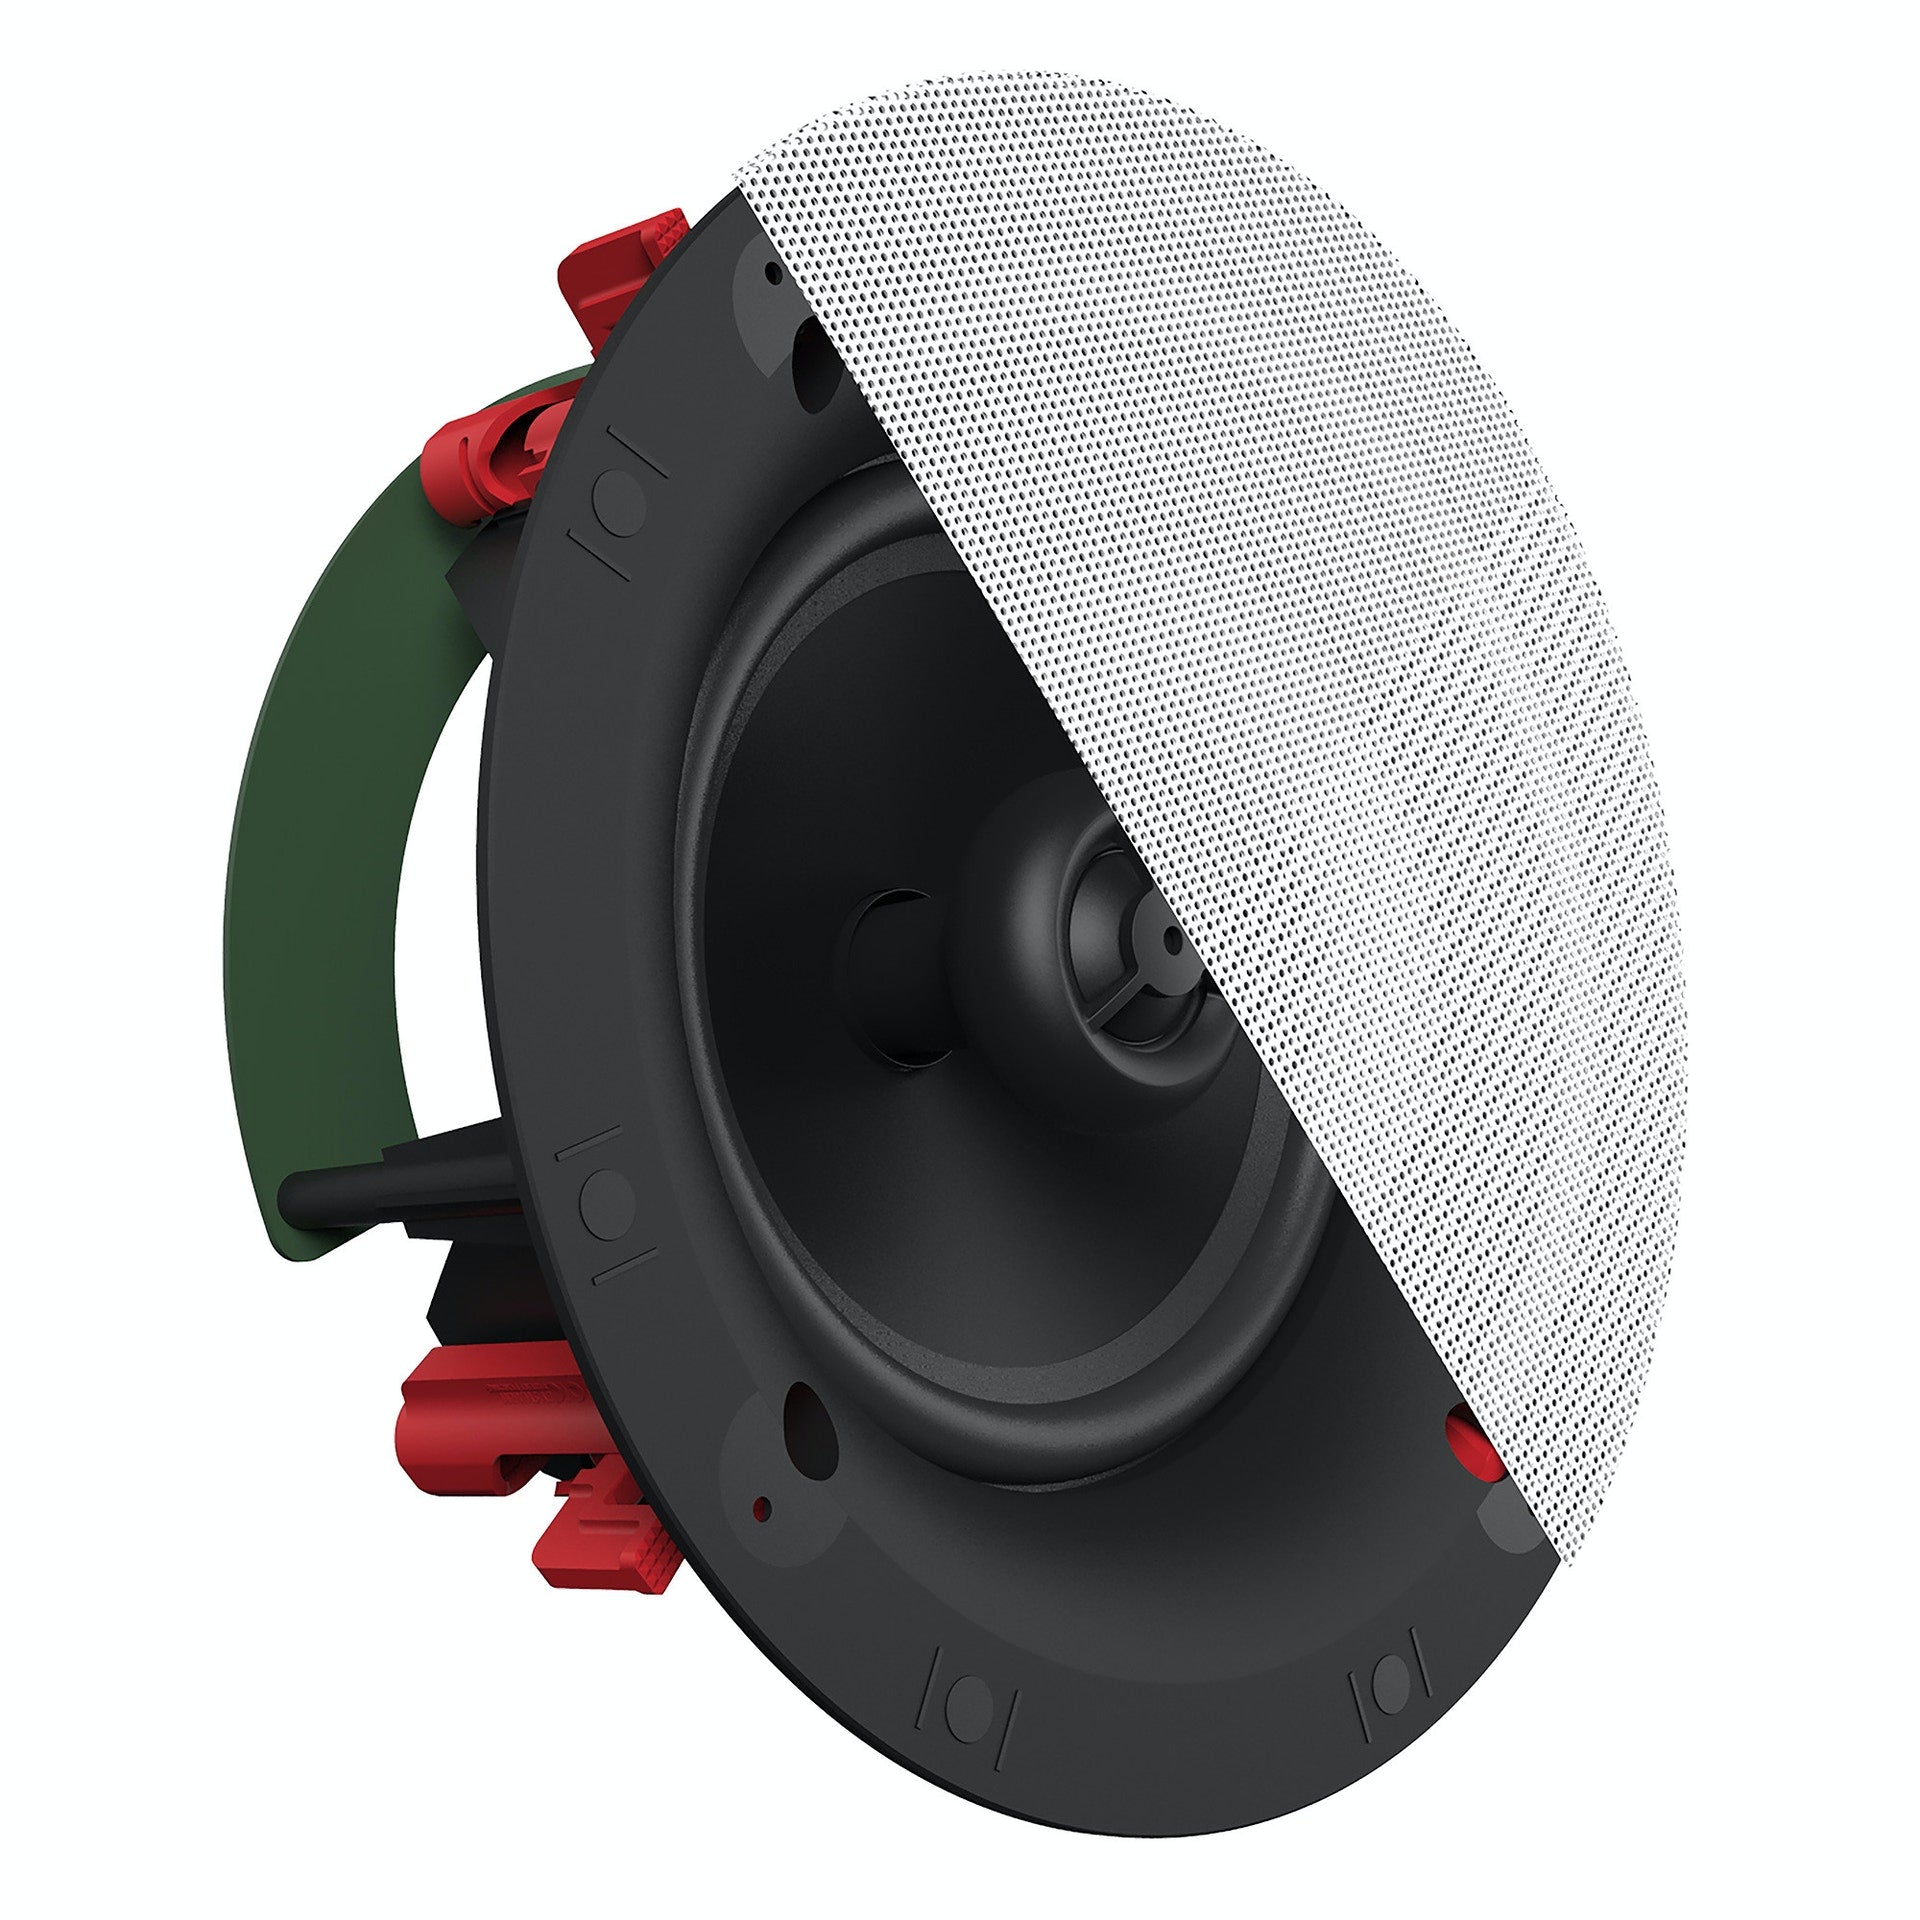 Klipsch DS-160C 6.5" In-Ceiling Speaker (Single)